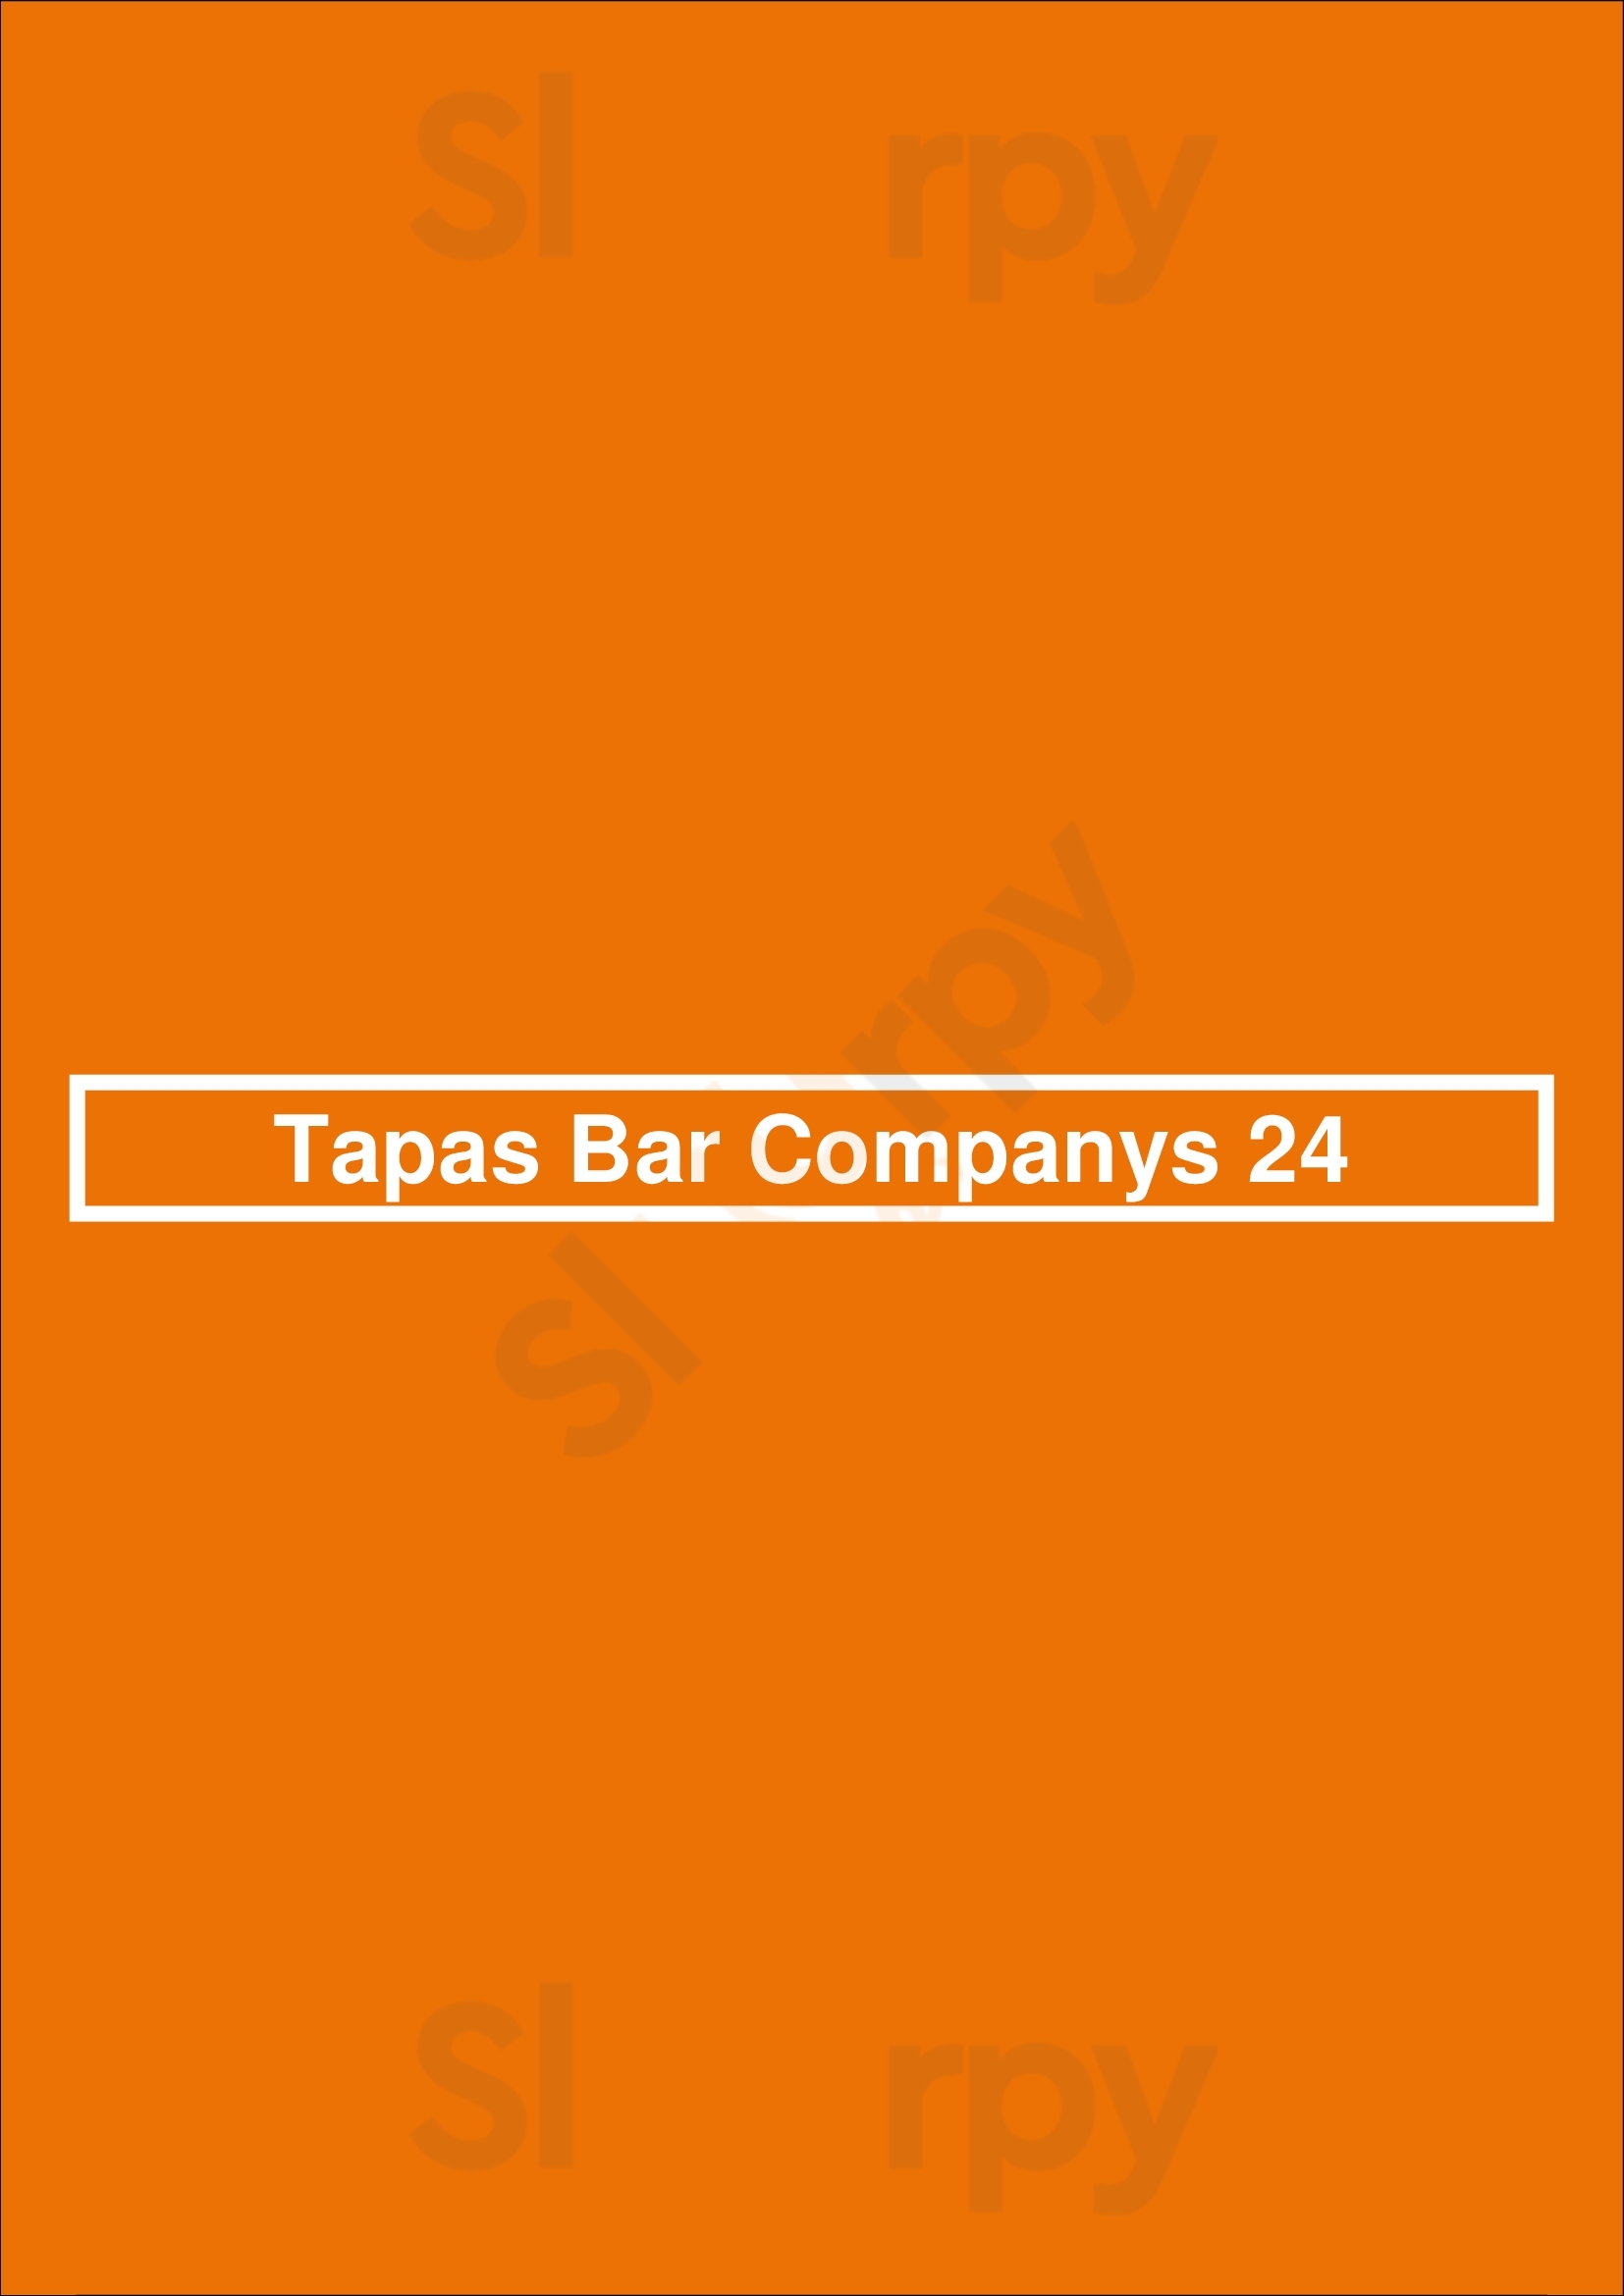 Tapas Bar Companys 24 Vilafranca del Penedès Menu - 1